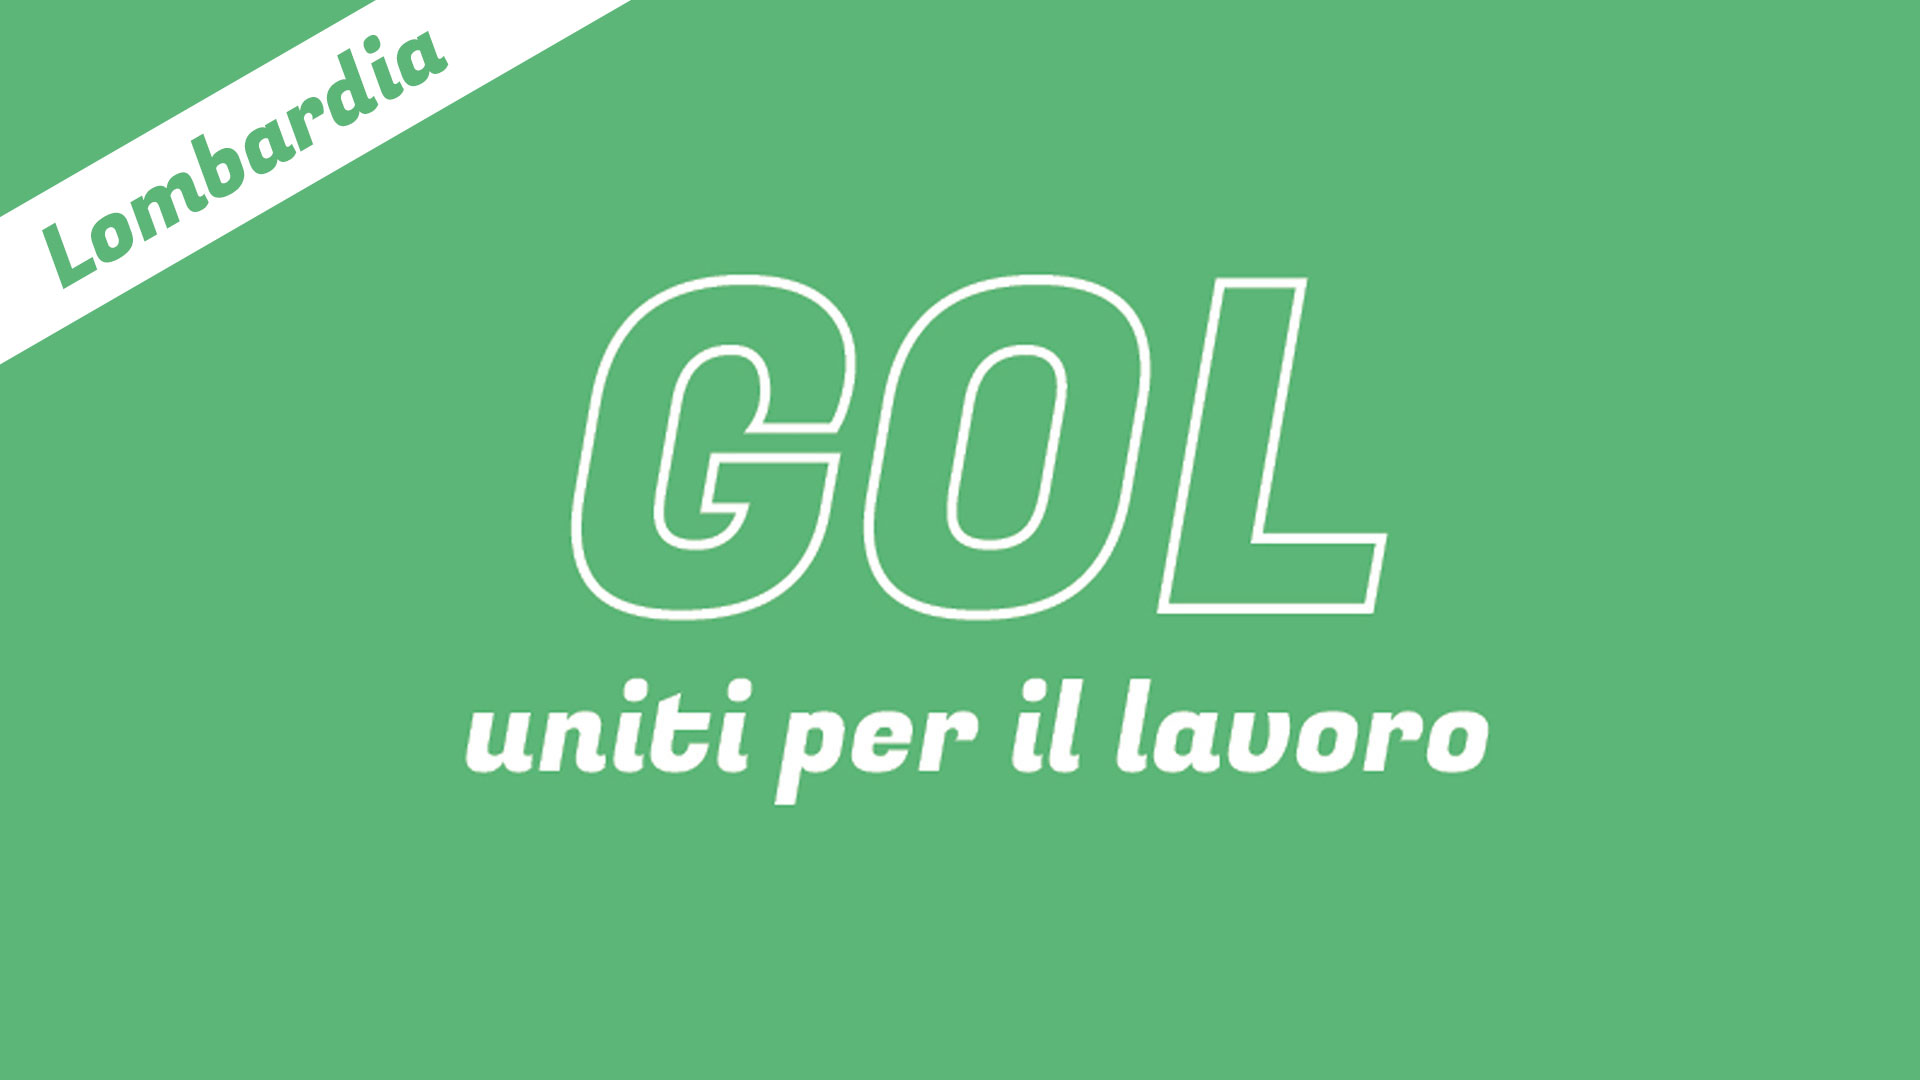 GOL! Lombardia – Uniti per il lavoro – Da adesso anche per i giovani dai 16 anni.